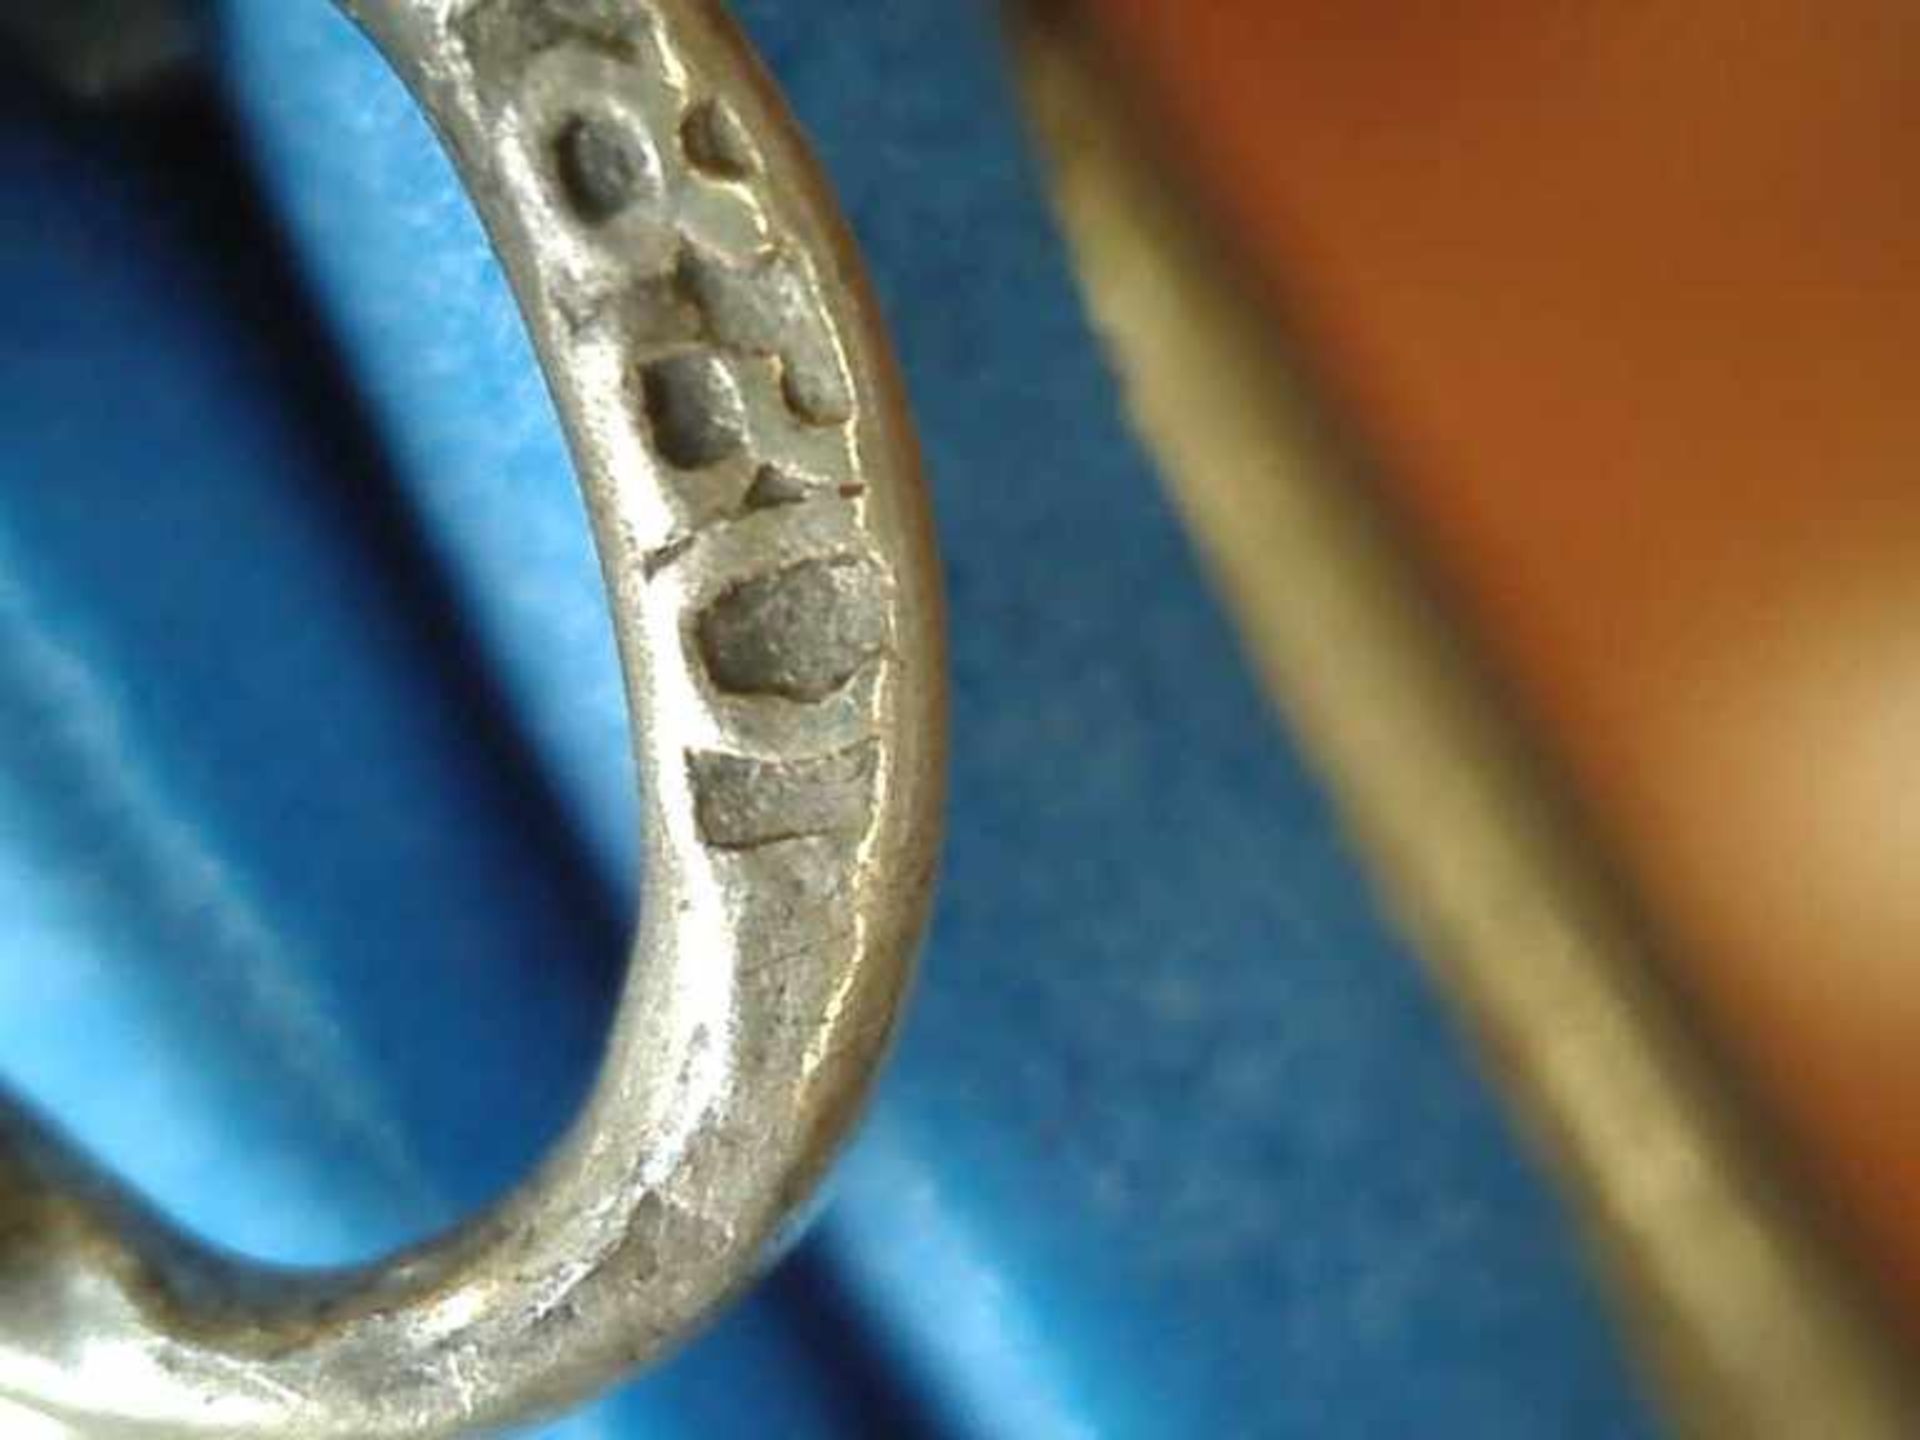 Armband 830er Silber, 8 g, durchbrochen gearbeitete Kettenglieder, mit 3 gefassten Amethysten, - Image 2 of 2